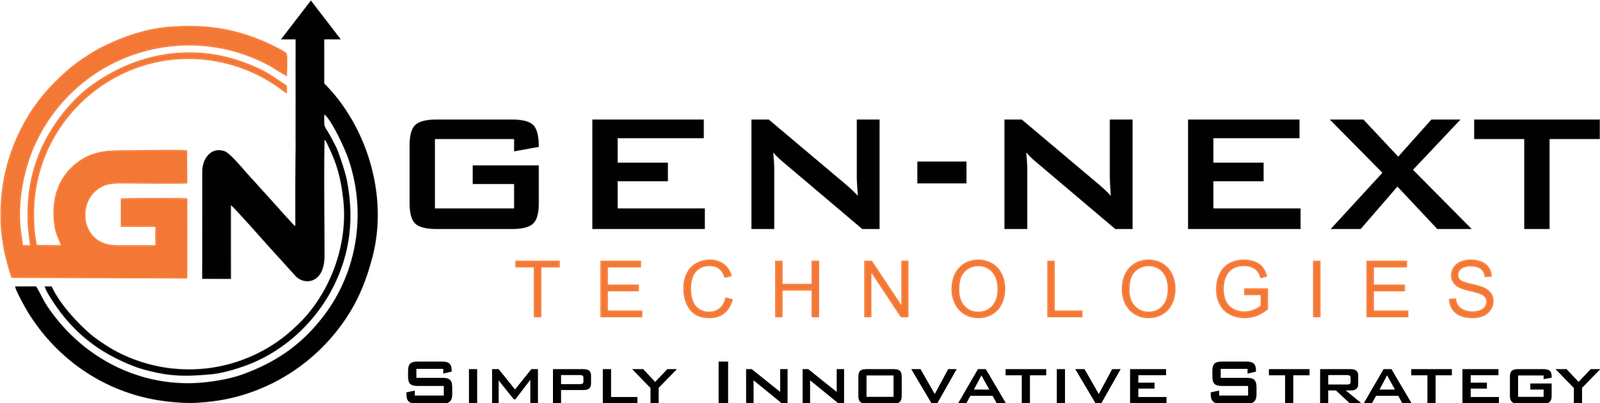 Gen-Next Technology,LLC